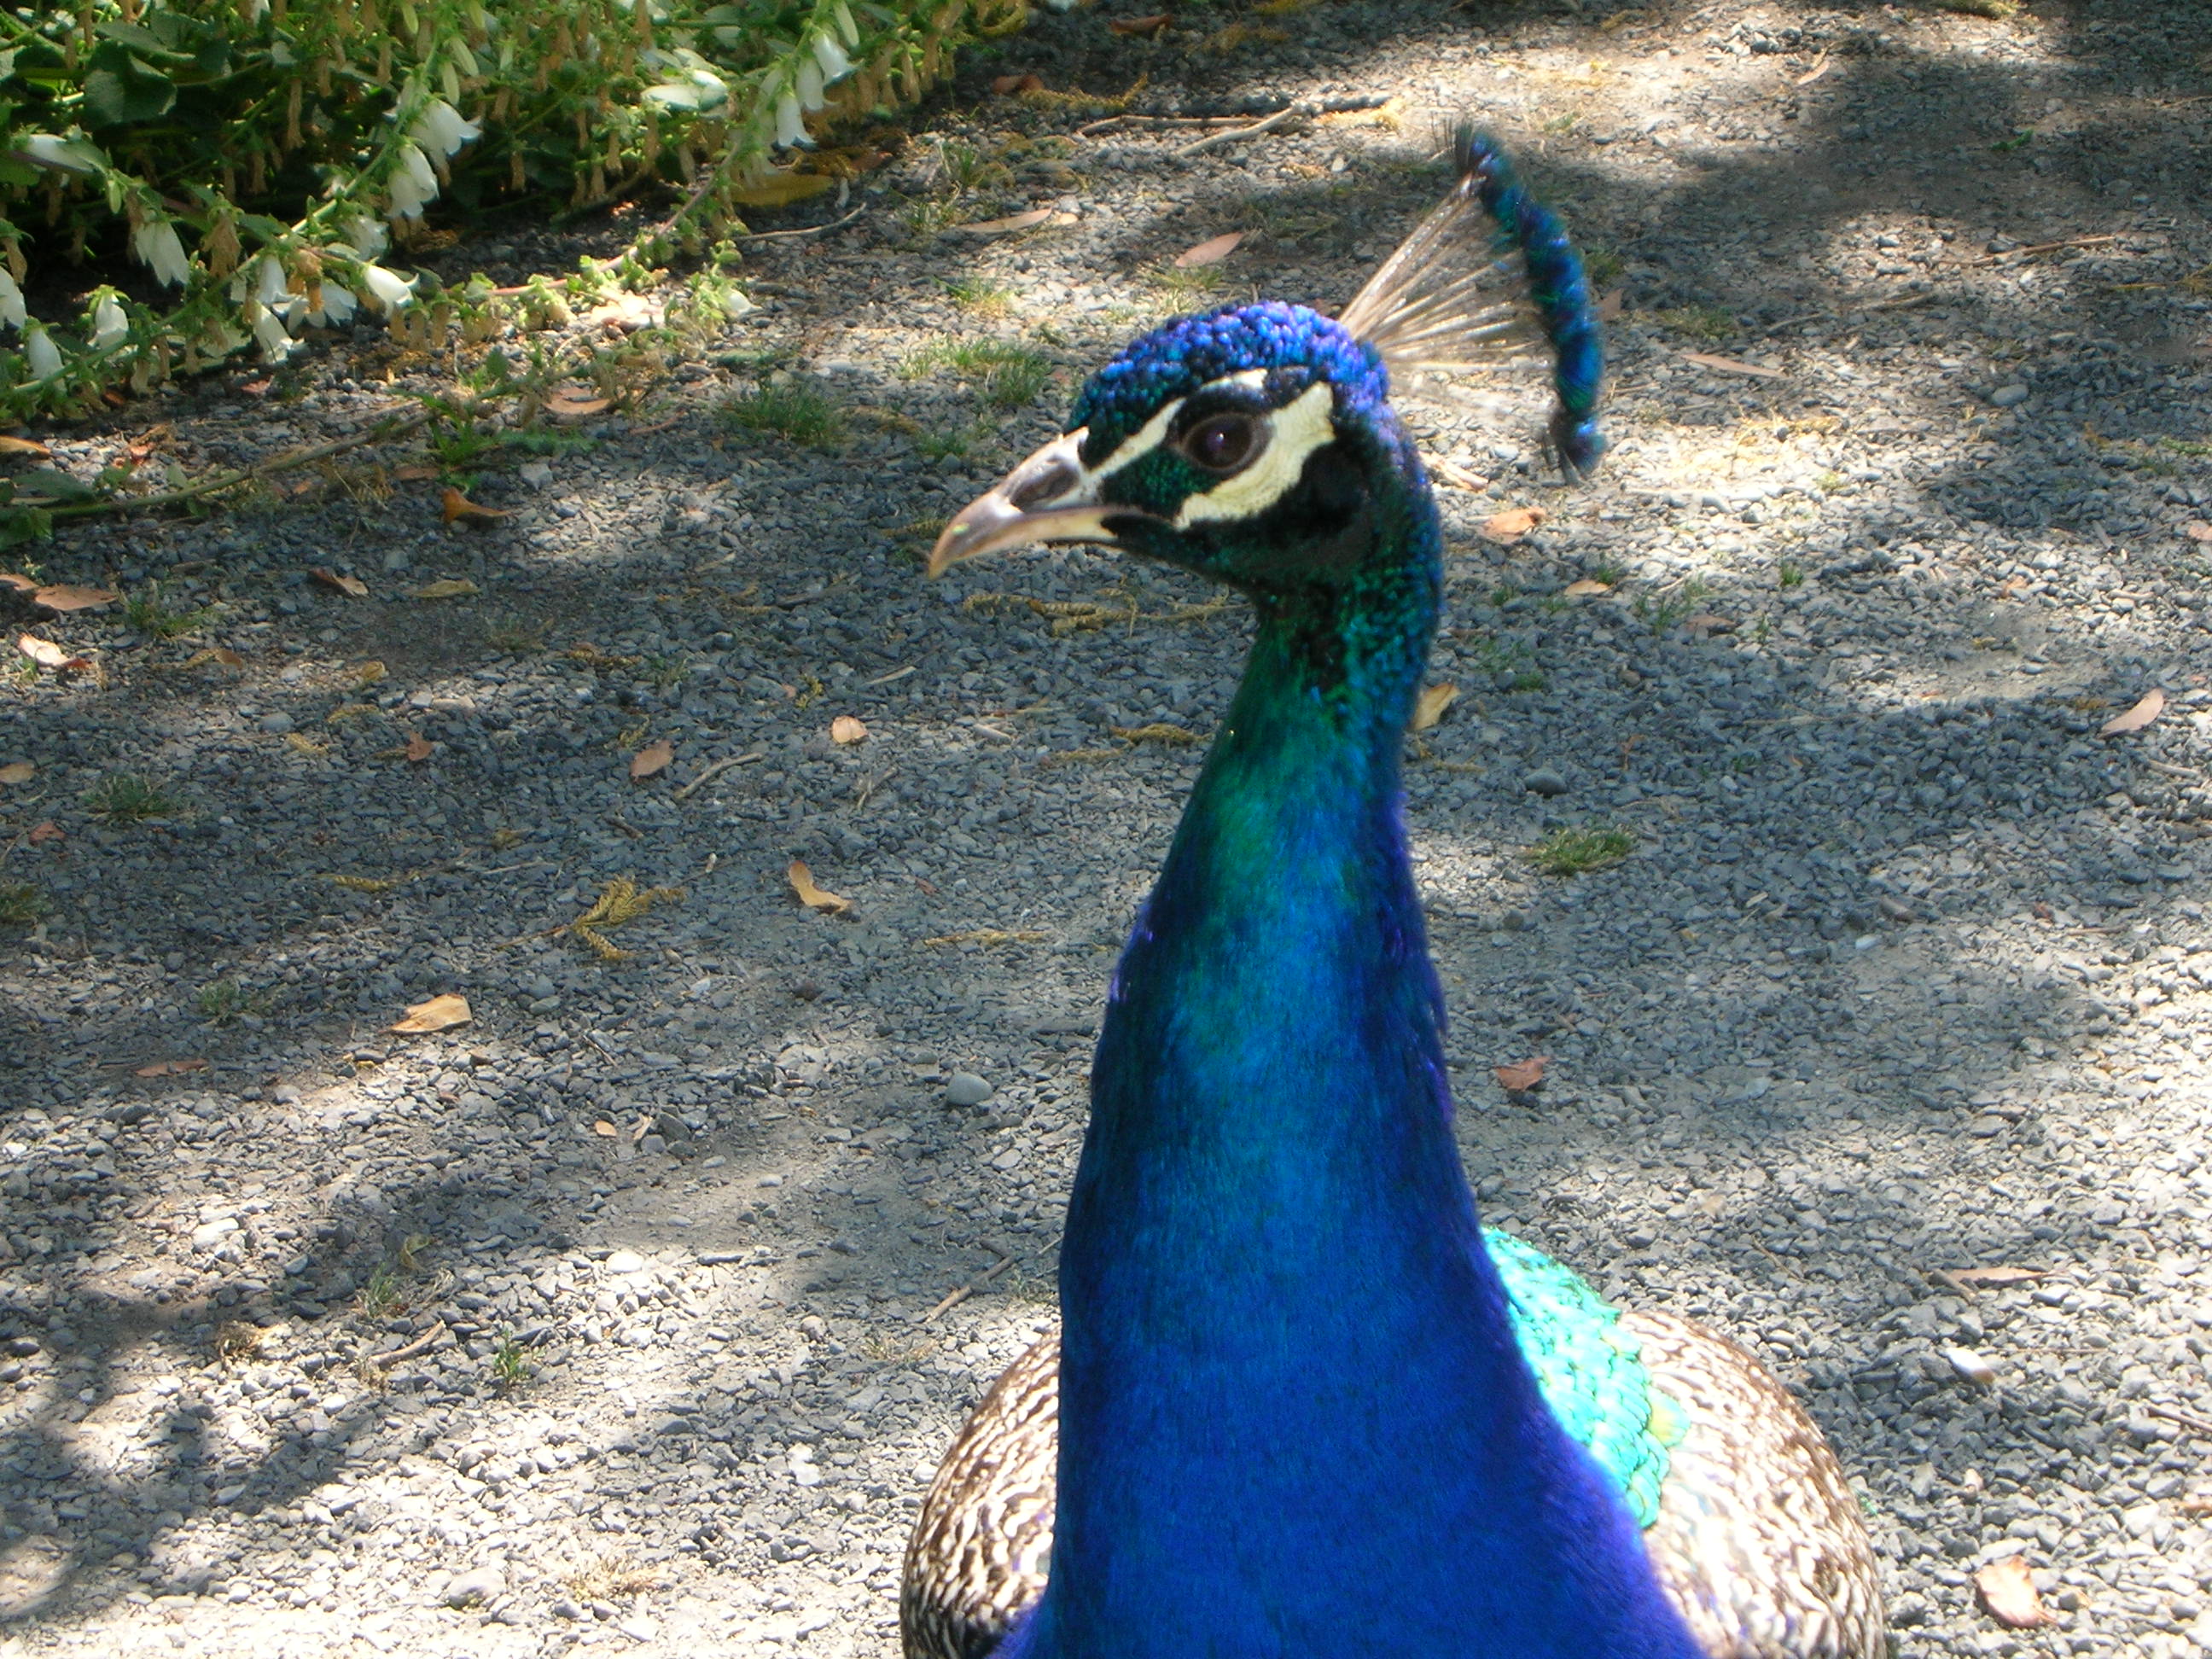 Peacock at Royal Roads U.